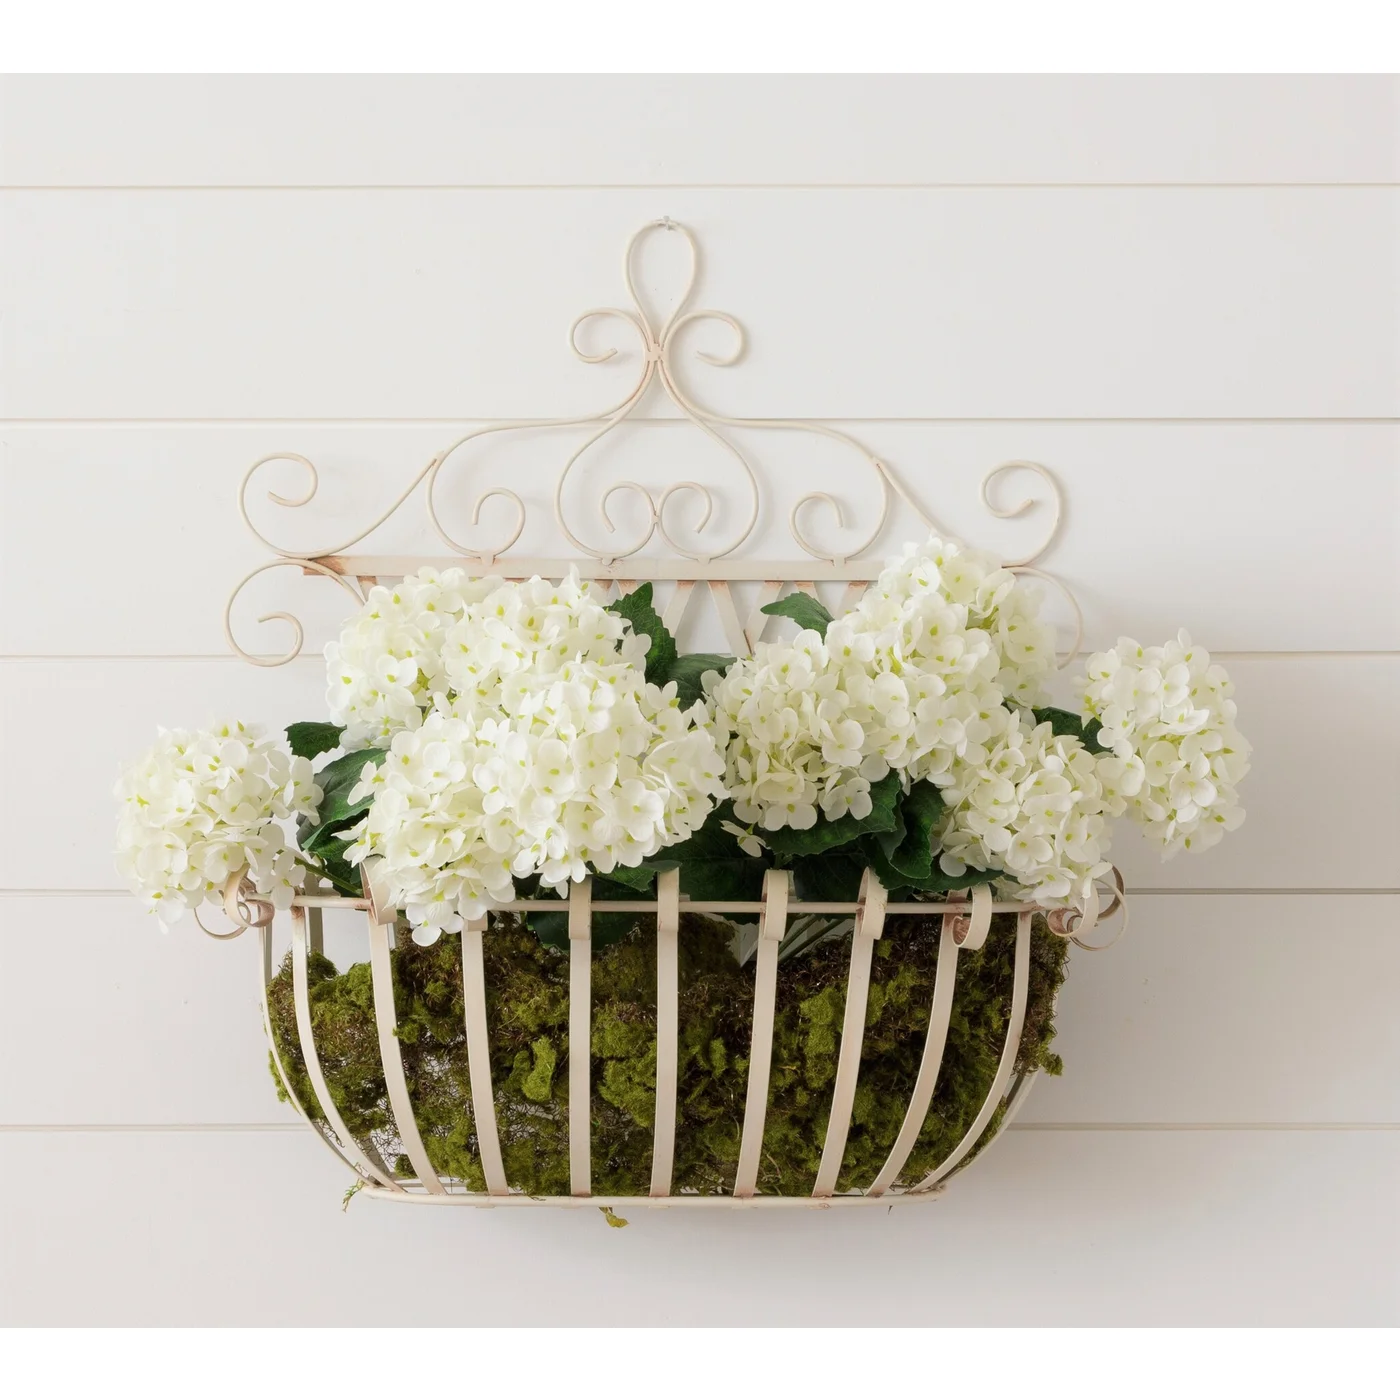 White Metal Wall Hanging Flower Basket